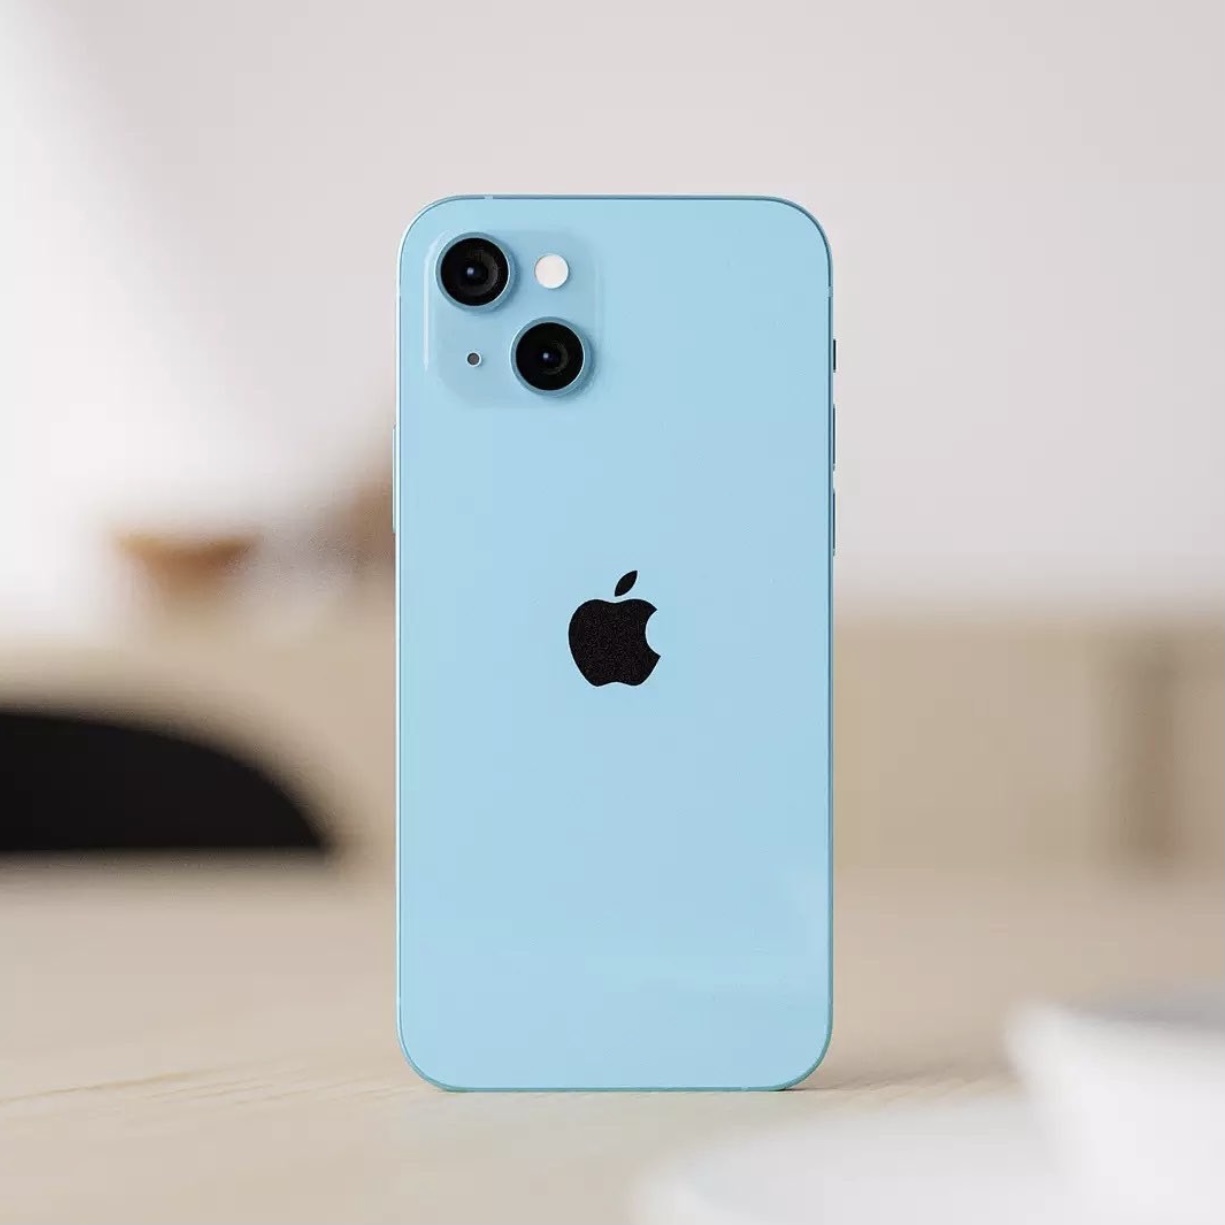 Trước ngày ra mắt, iPhone 13 lộ concept màu ocean blue giống hệt hint trên thư mời? - Ảnh 4.